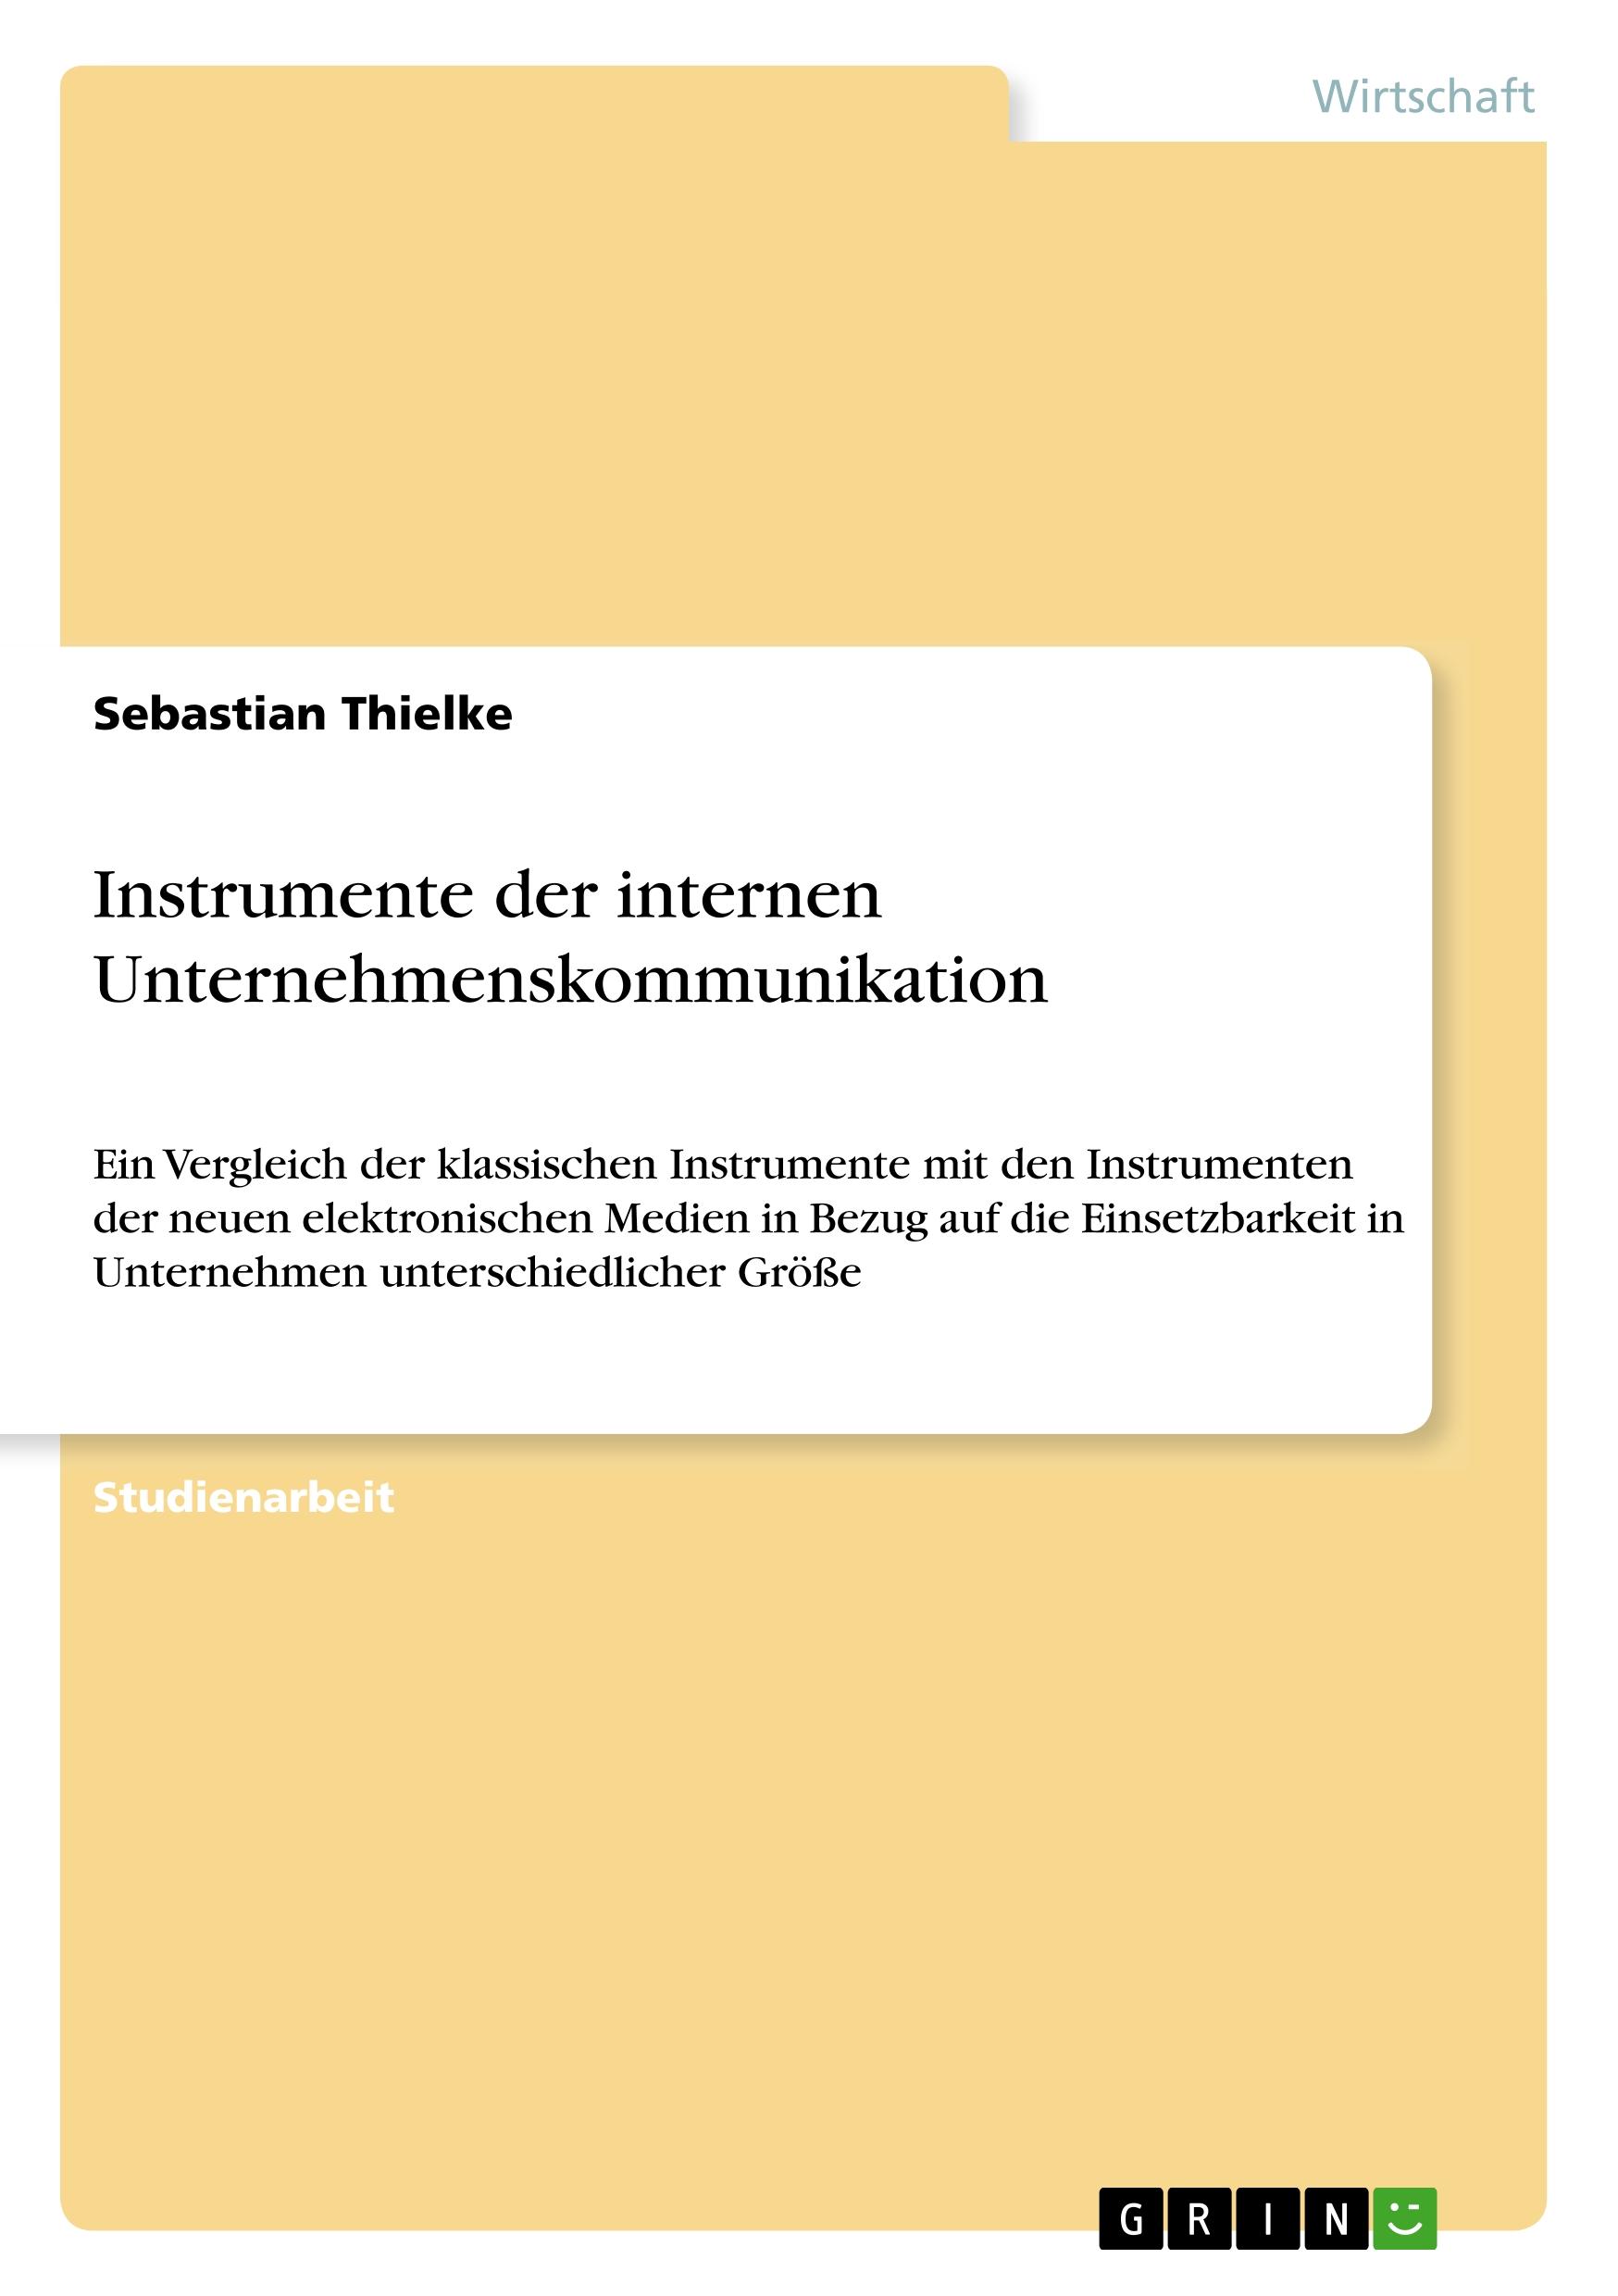 Instrumente der internen Unternehmenskommunikation - Thielke, Sebastian